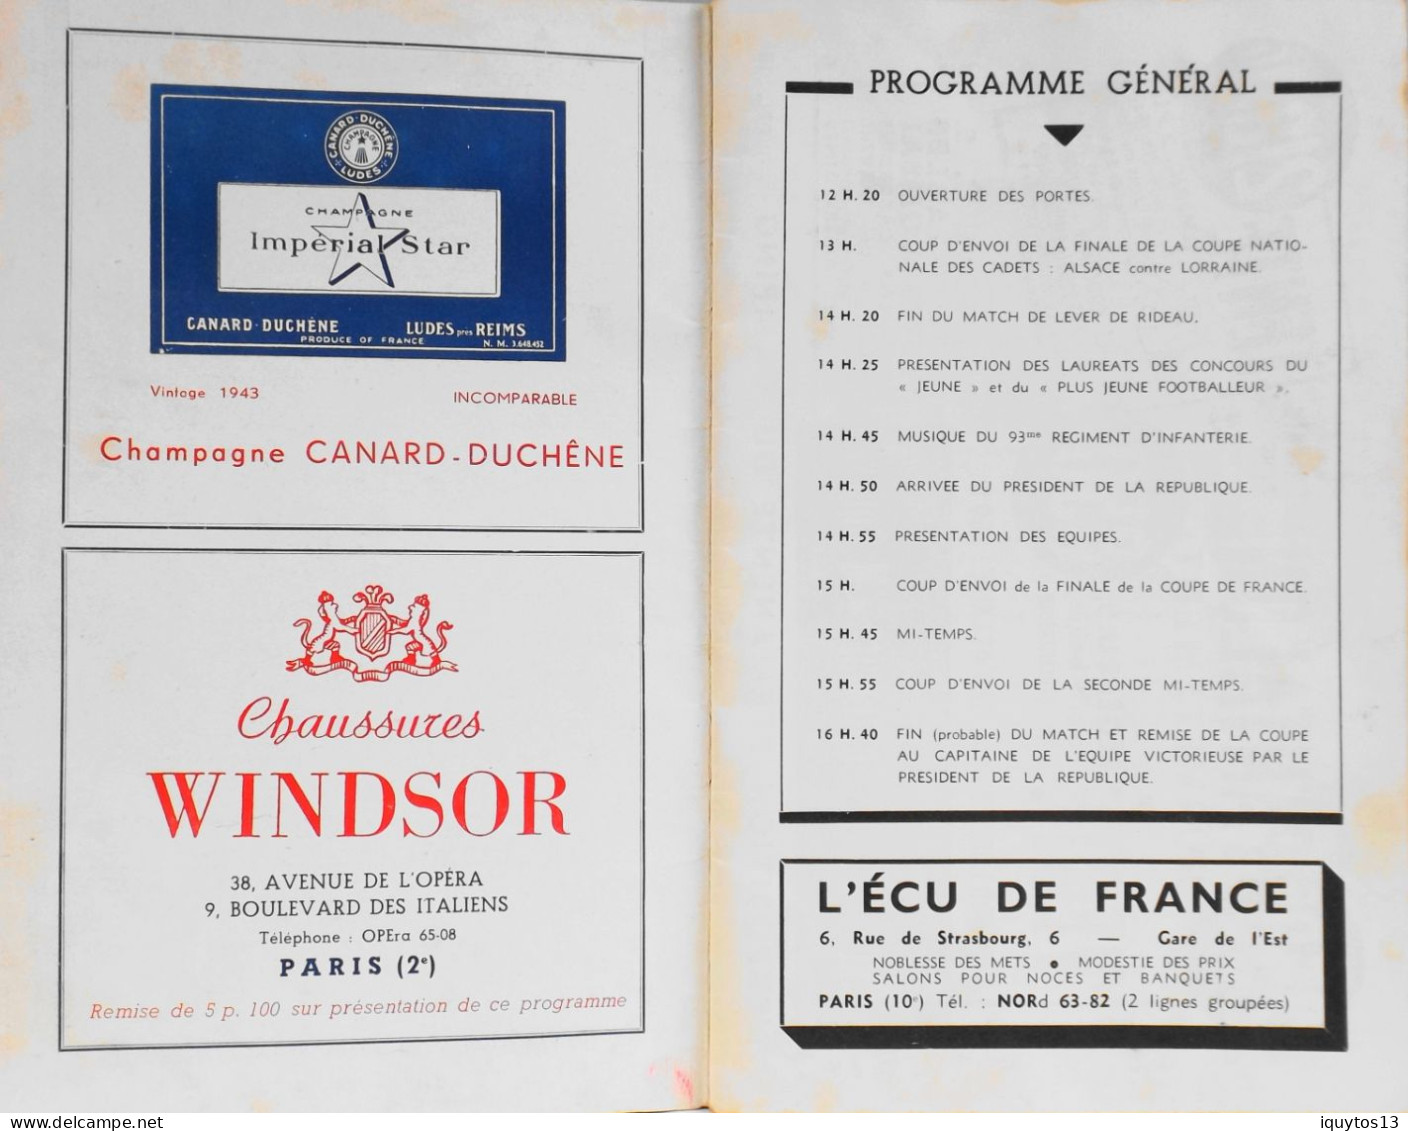 RARE Programme De FINALE De La COUPE De FRANCE Au Stade Colombes Le 6 Mai 1951 R.C. STRASBOURG / U.S. VALENCIENNES-ANZIN - Libri